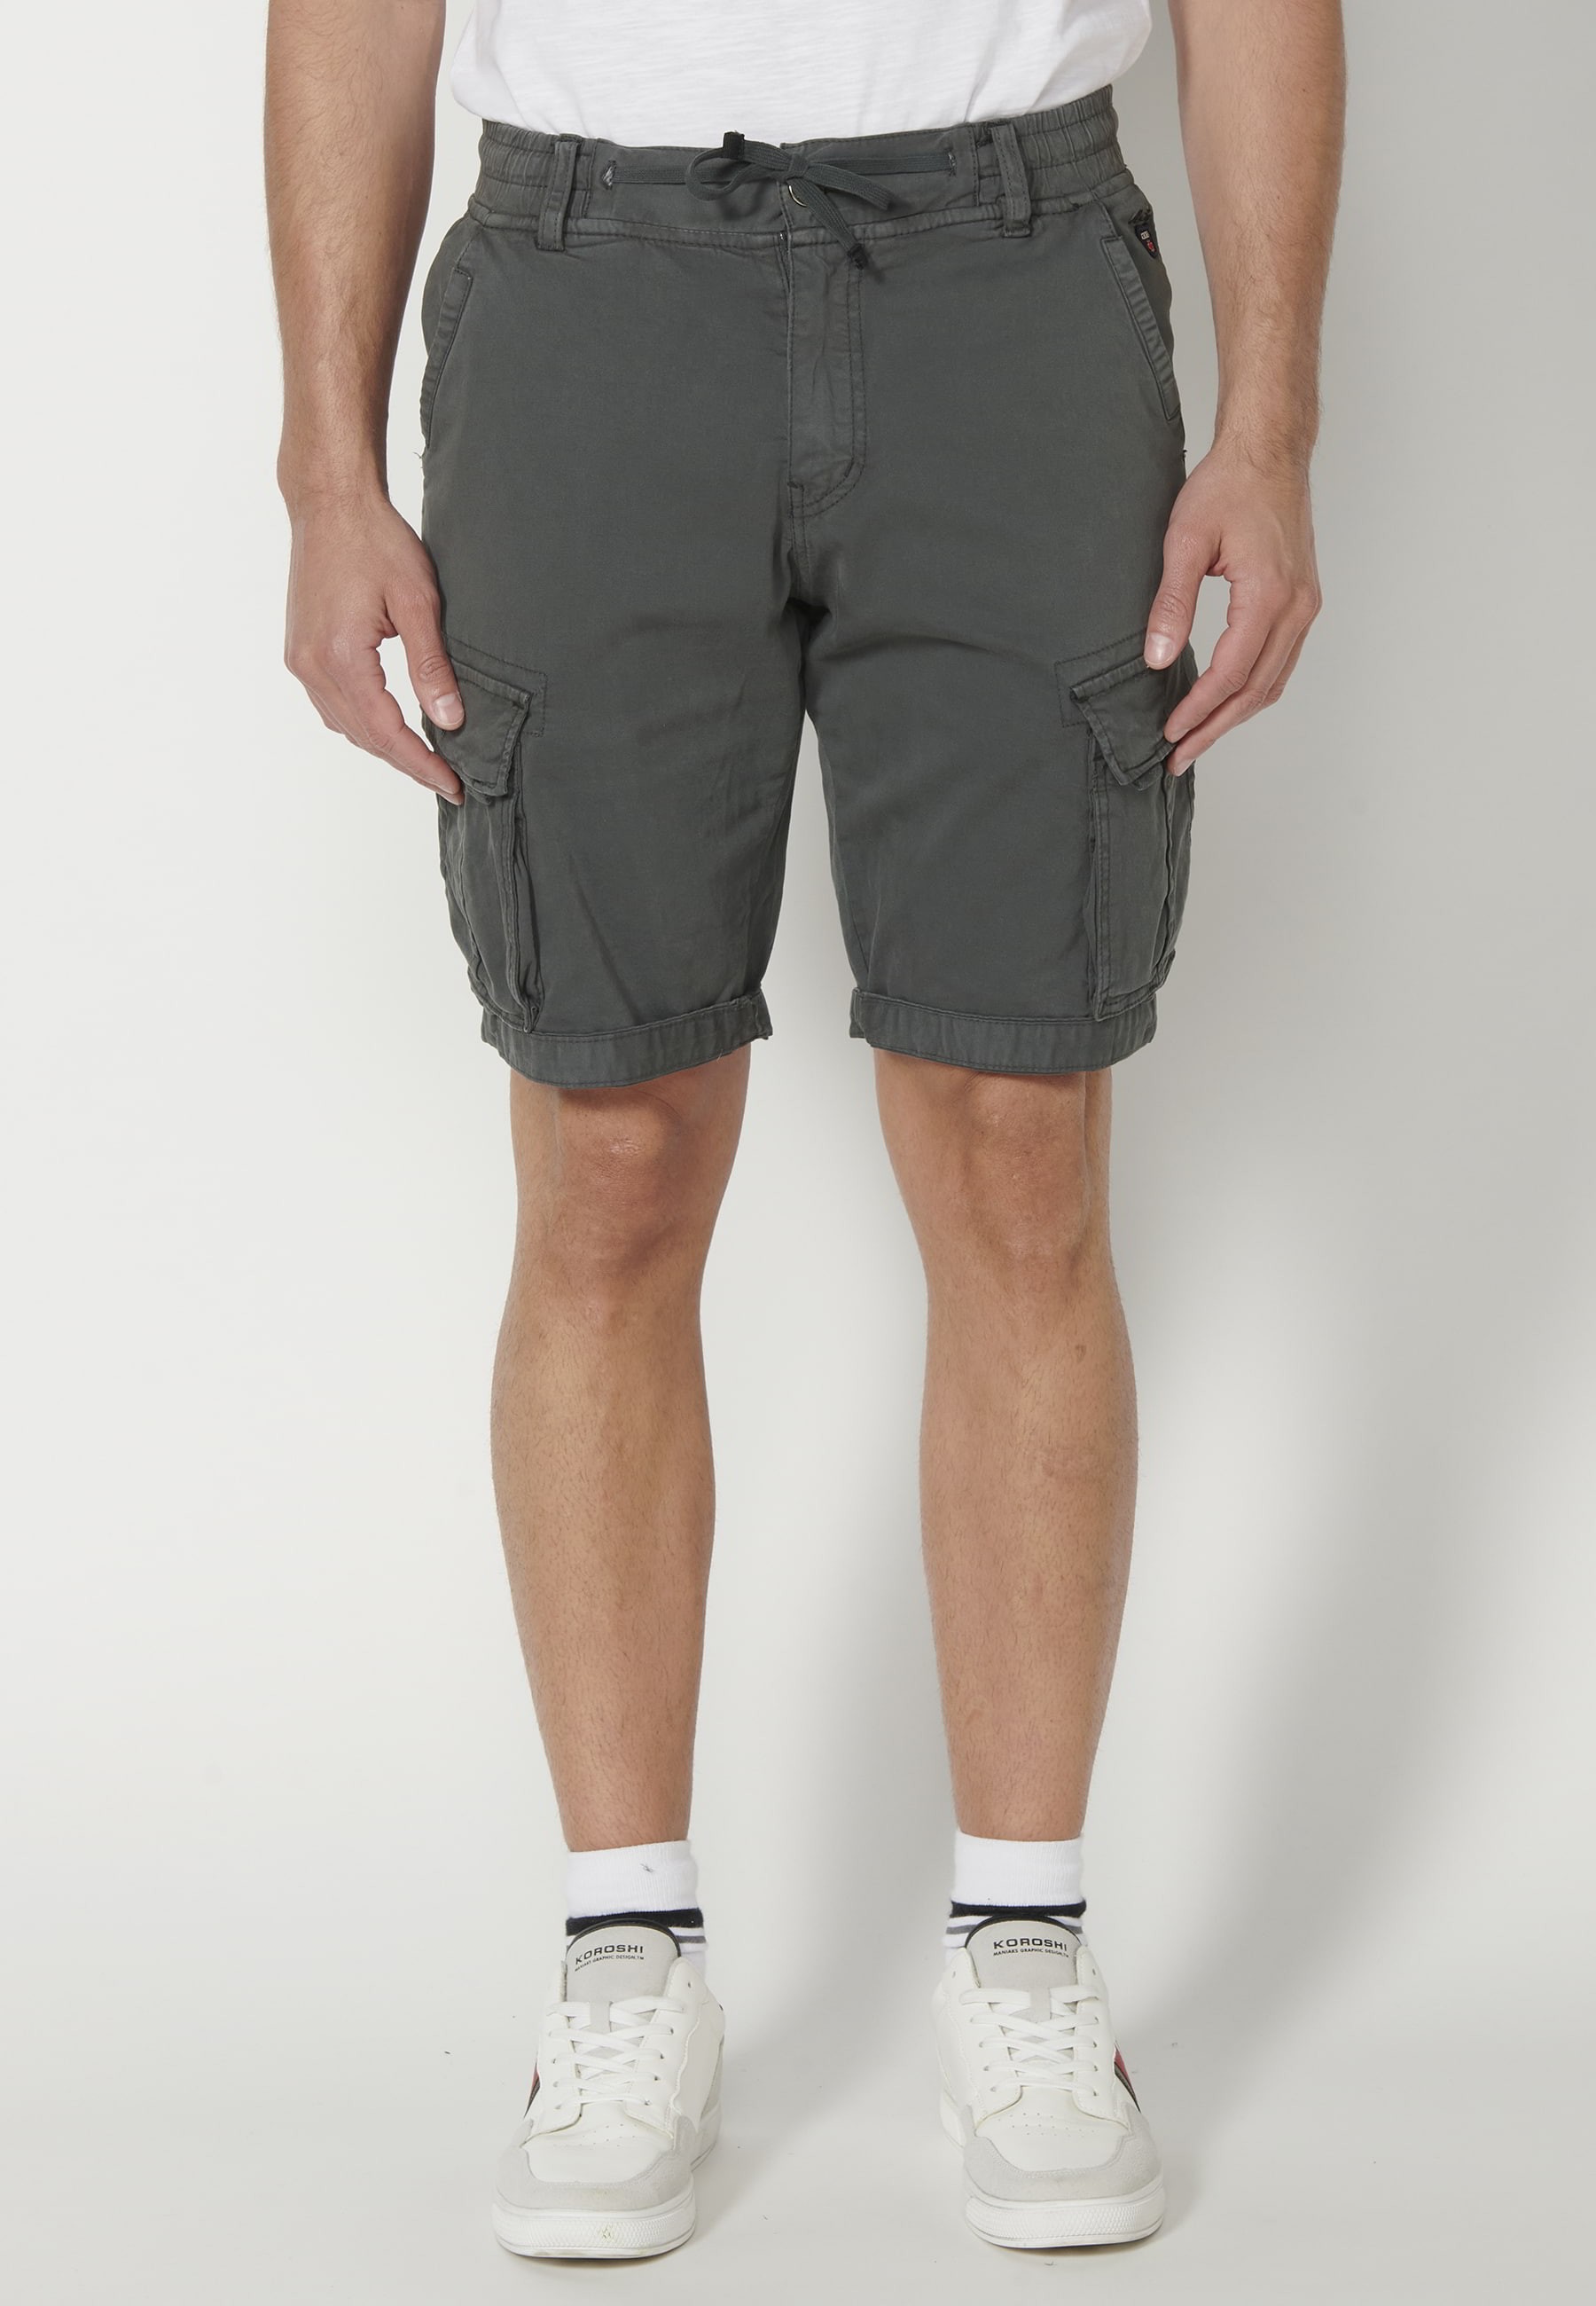 Bermuda-Shorts im Cargo-Stil in grauer Farbe für Herren